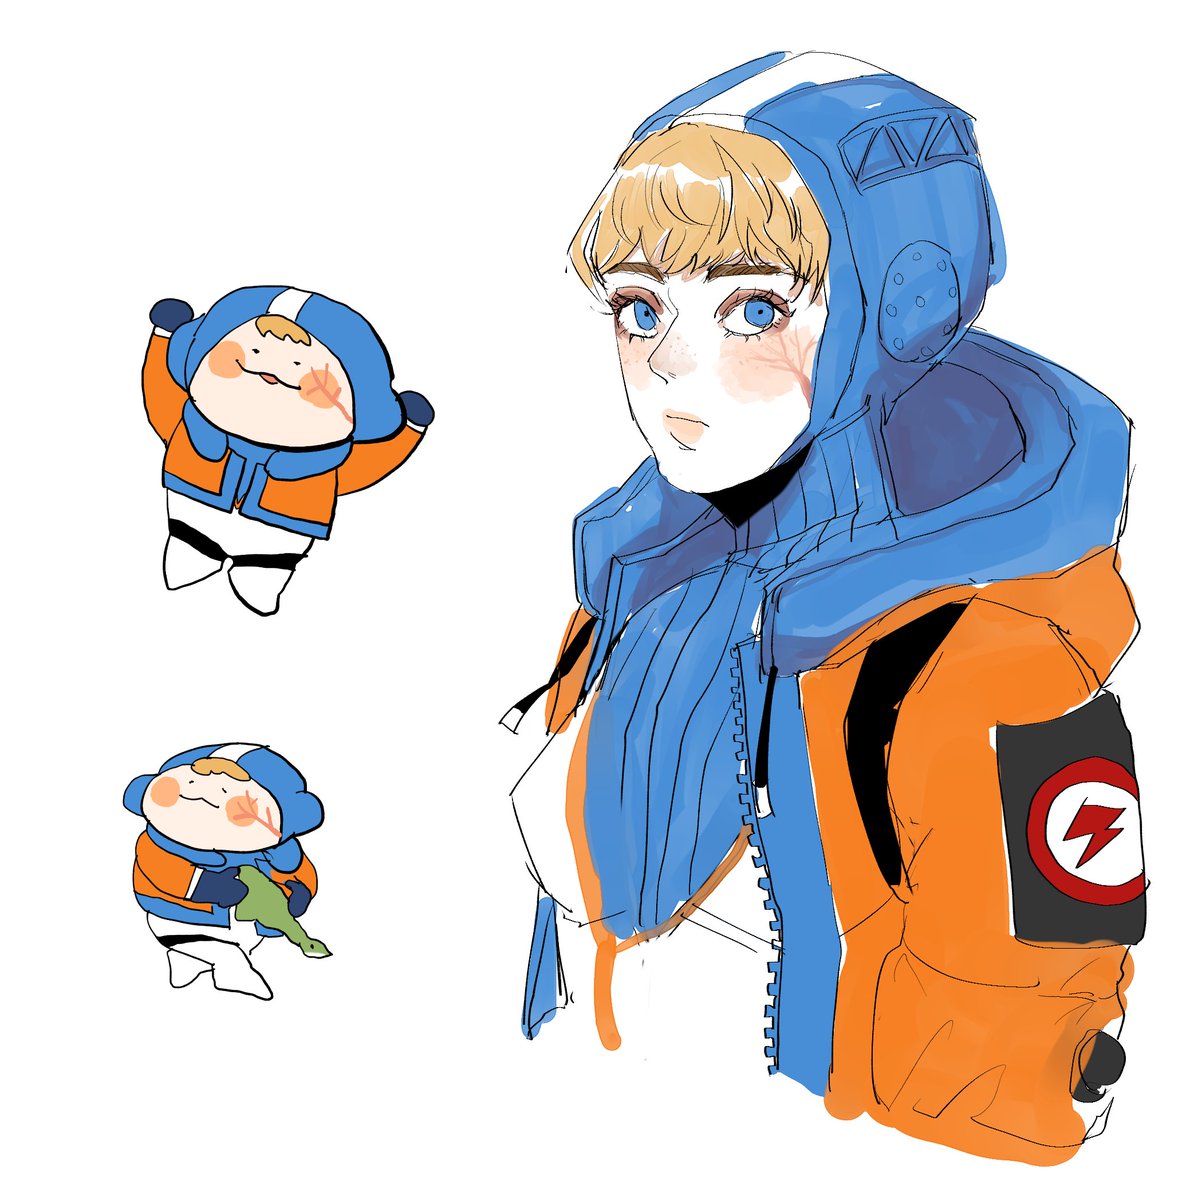 wattson (apex legends) 1girl orange jacket jacket hood white bodysuit animification hooded jacket  illustration images